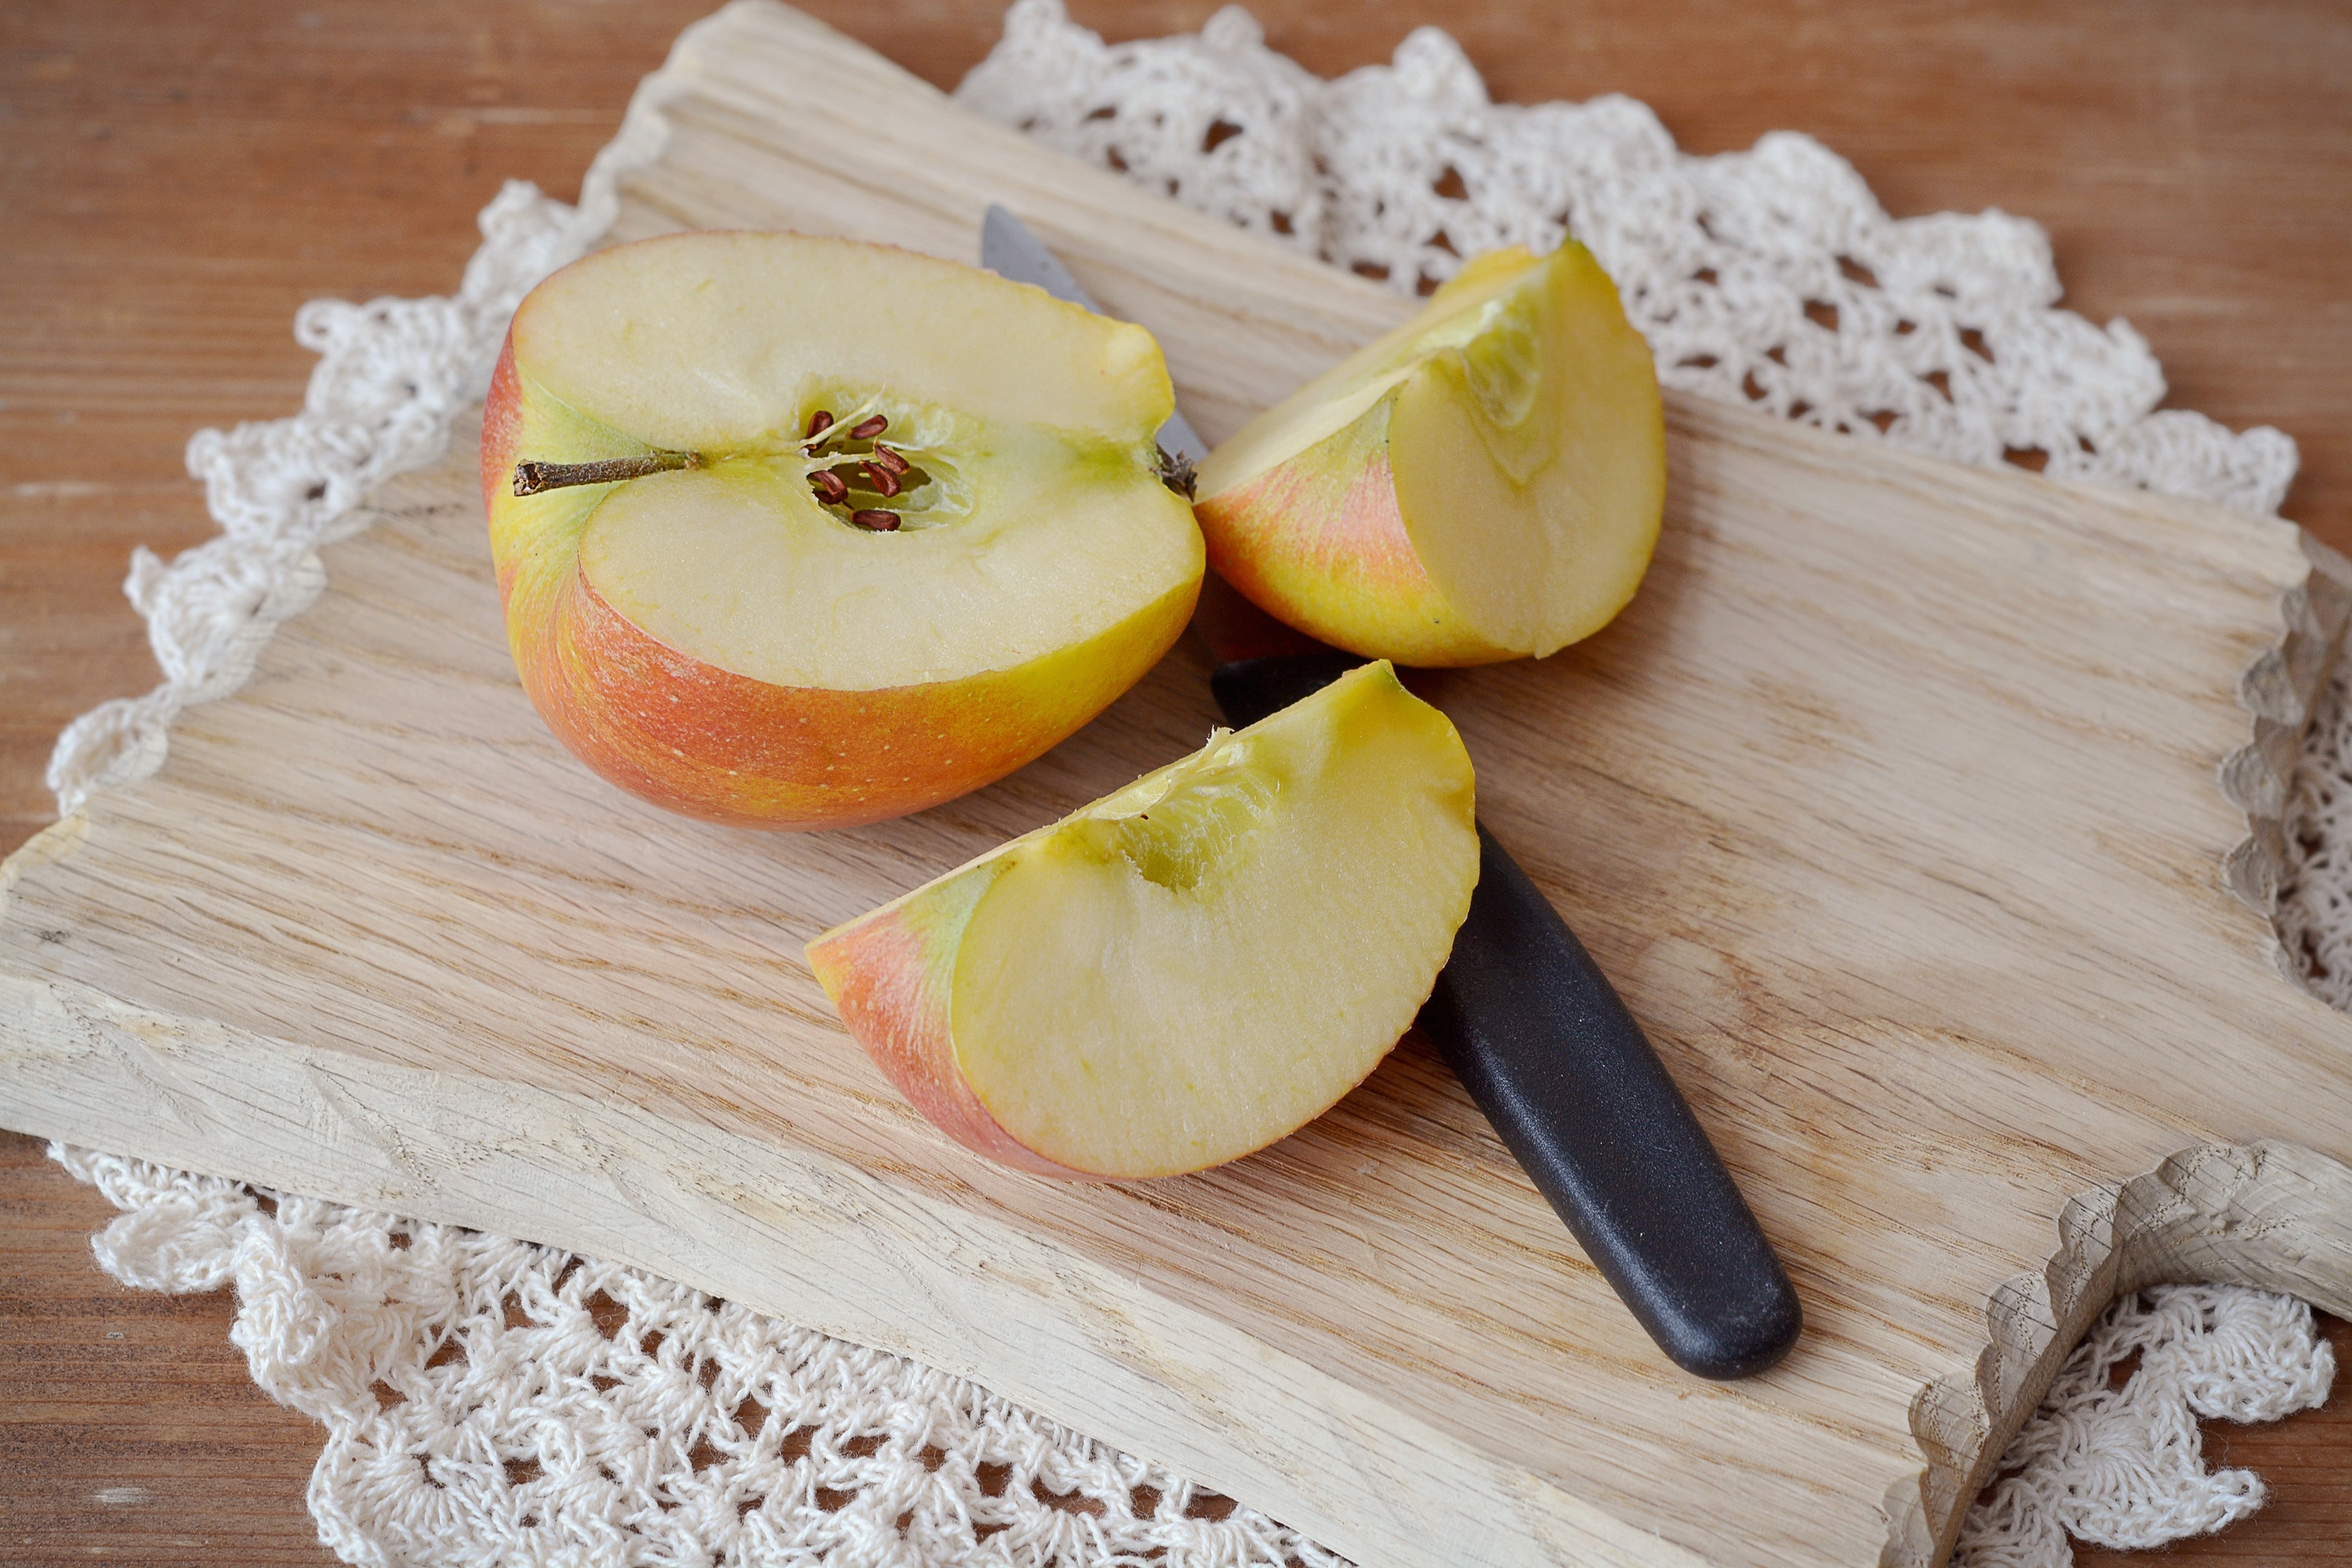 sliced apple fruit